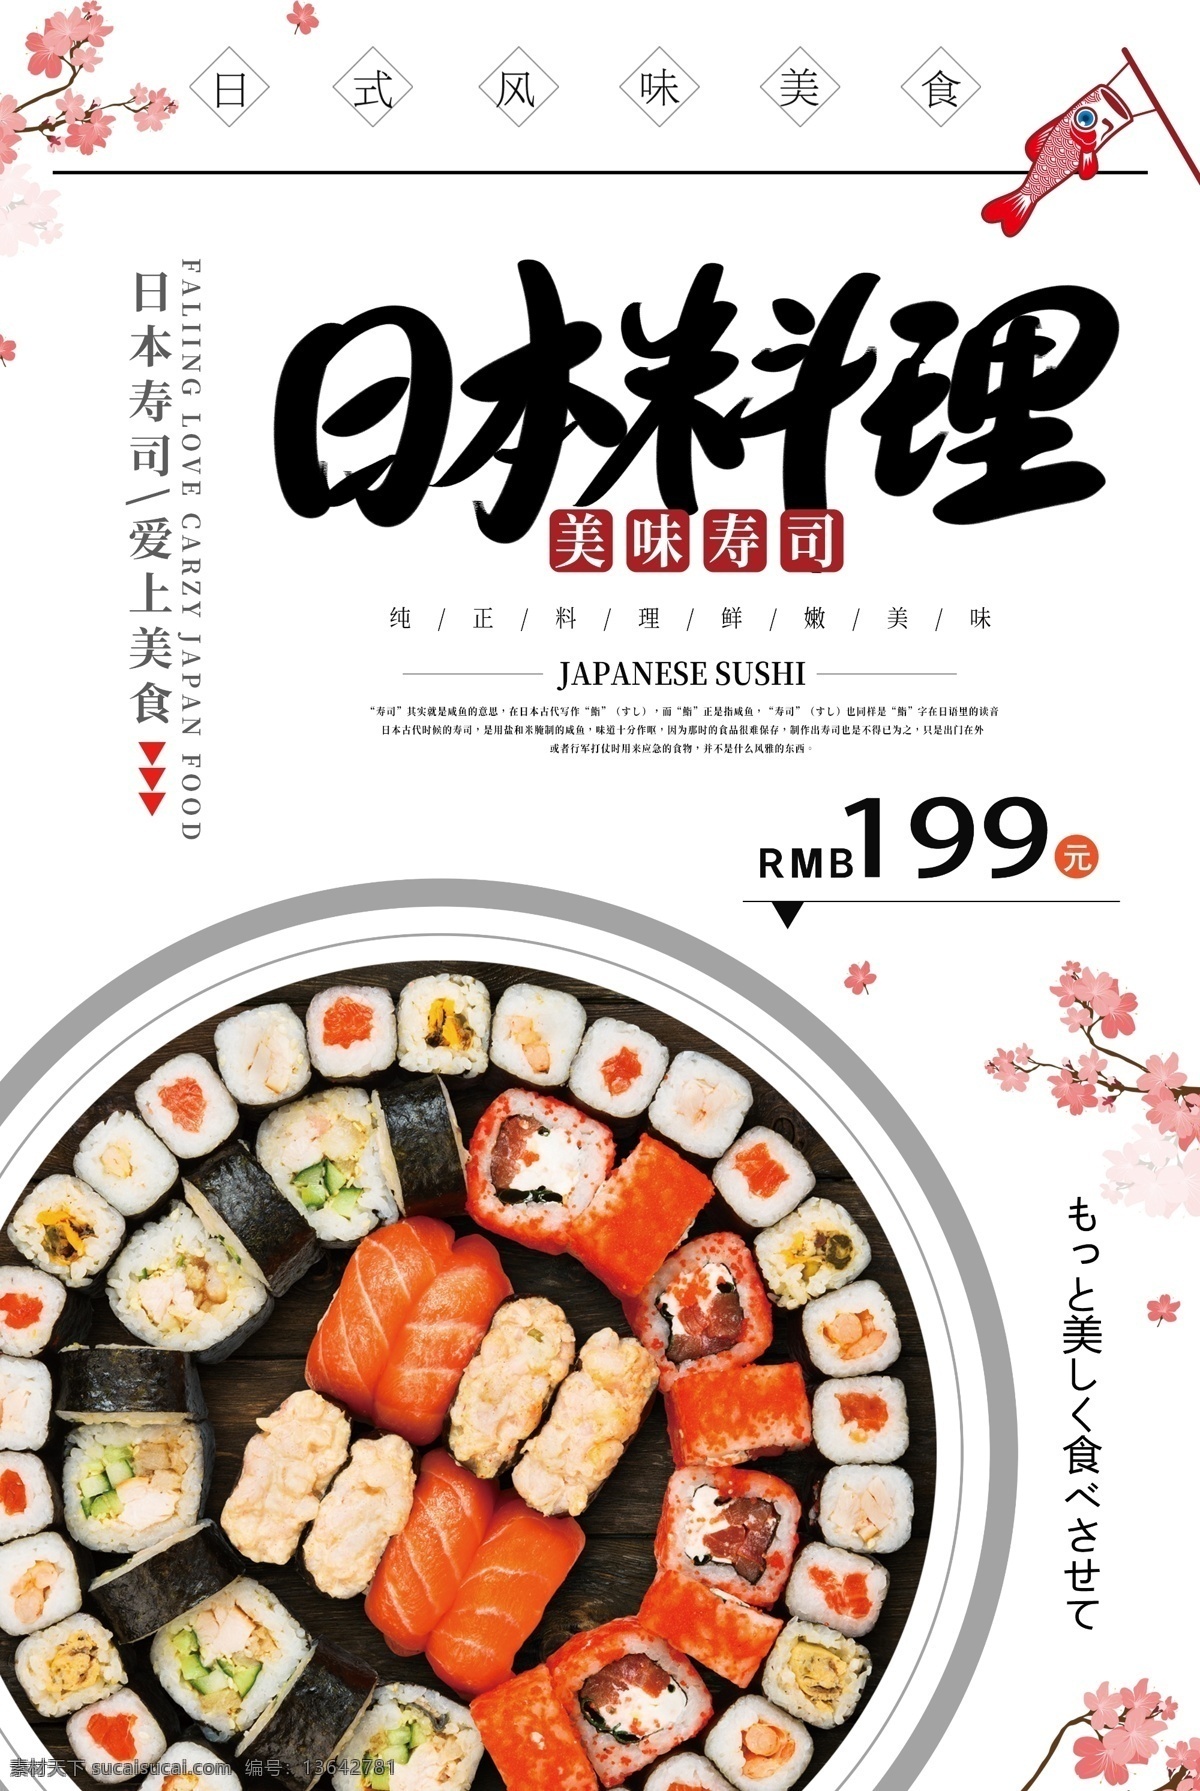 日本 美食 料理 寿司 促销 海报 寿司促销 寿司海报 日料 日本寿司 日本寿司海报 生鱼片 美味 食品 食品海报 美食餐饮